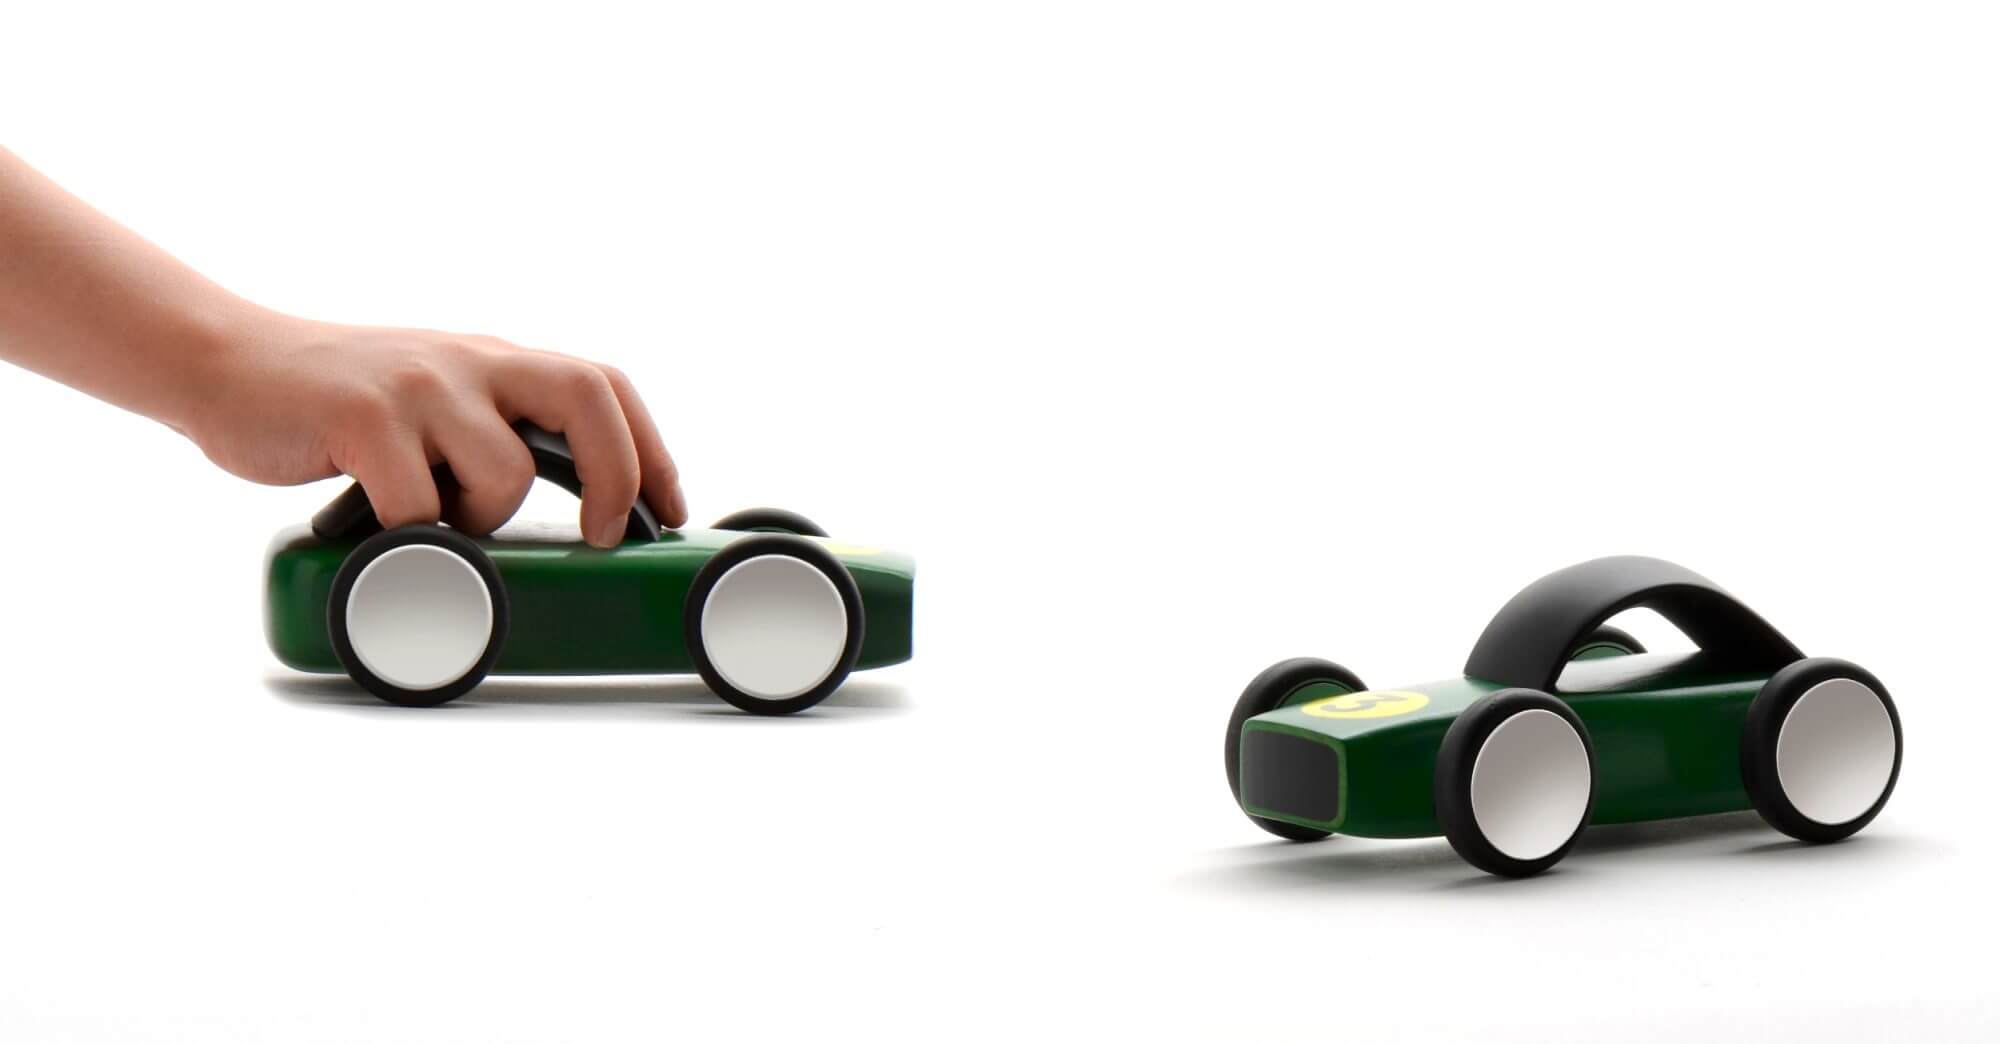 Richelieu Holzspielzeug Auto Flugzeug Zug Spielzeug Design Innovation